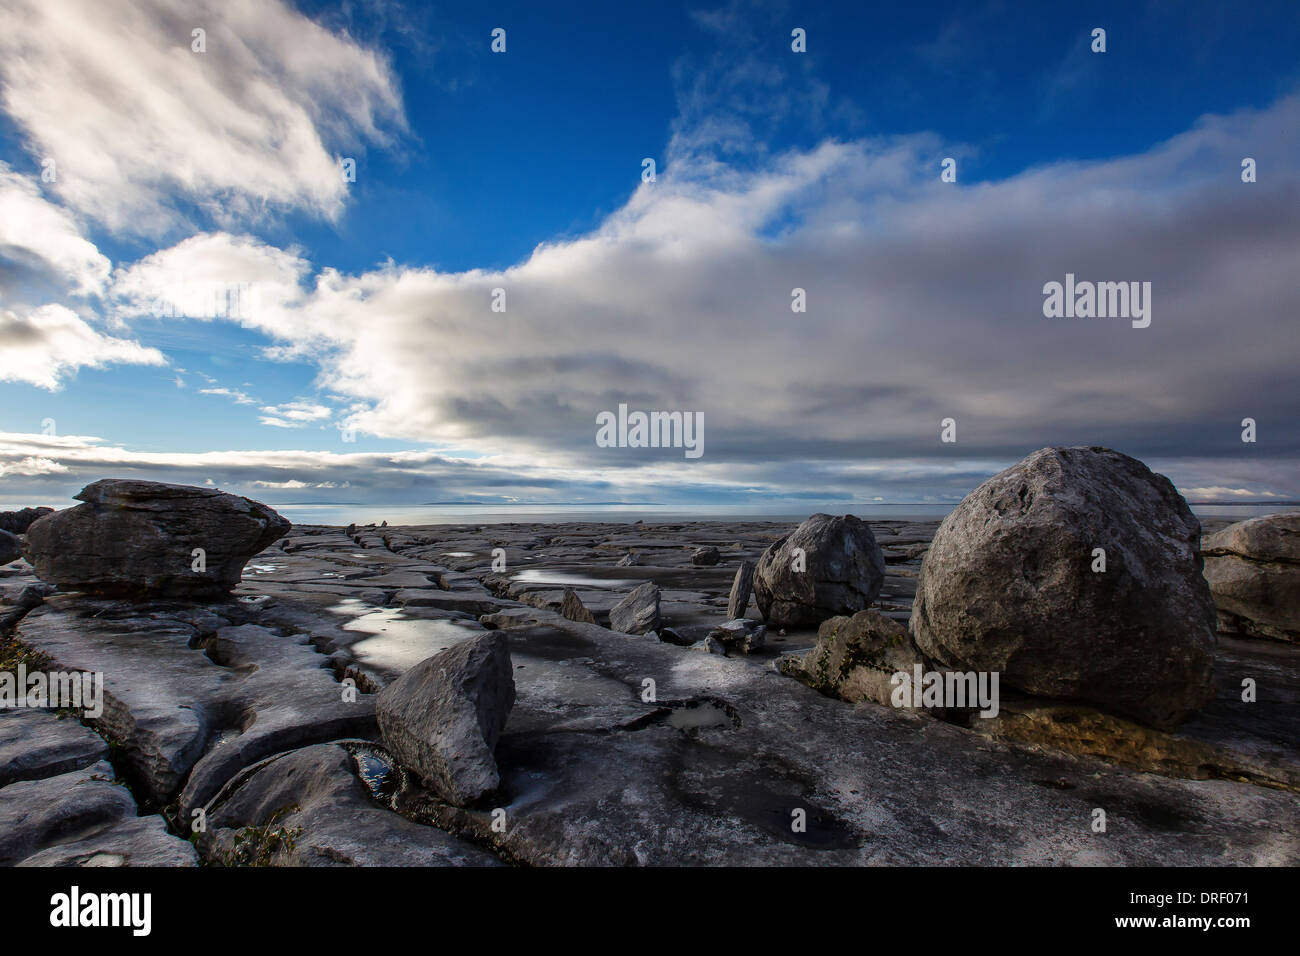 the Burren landscape near fanore county clare ireland Stock Photo